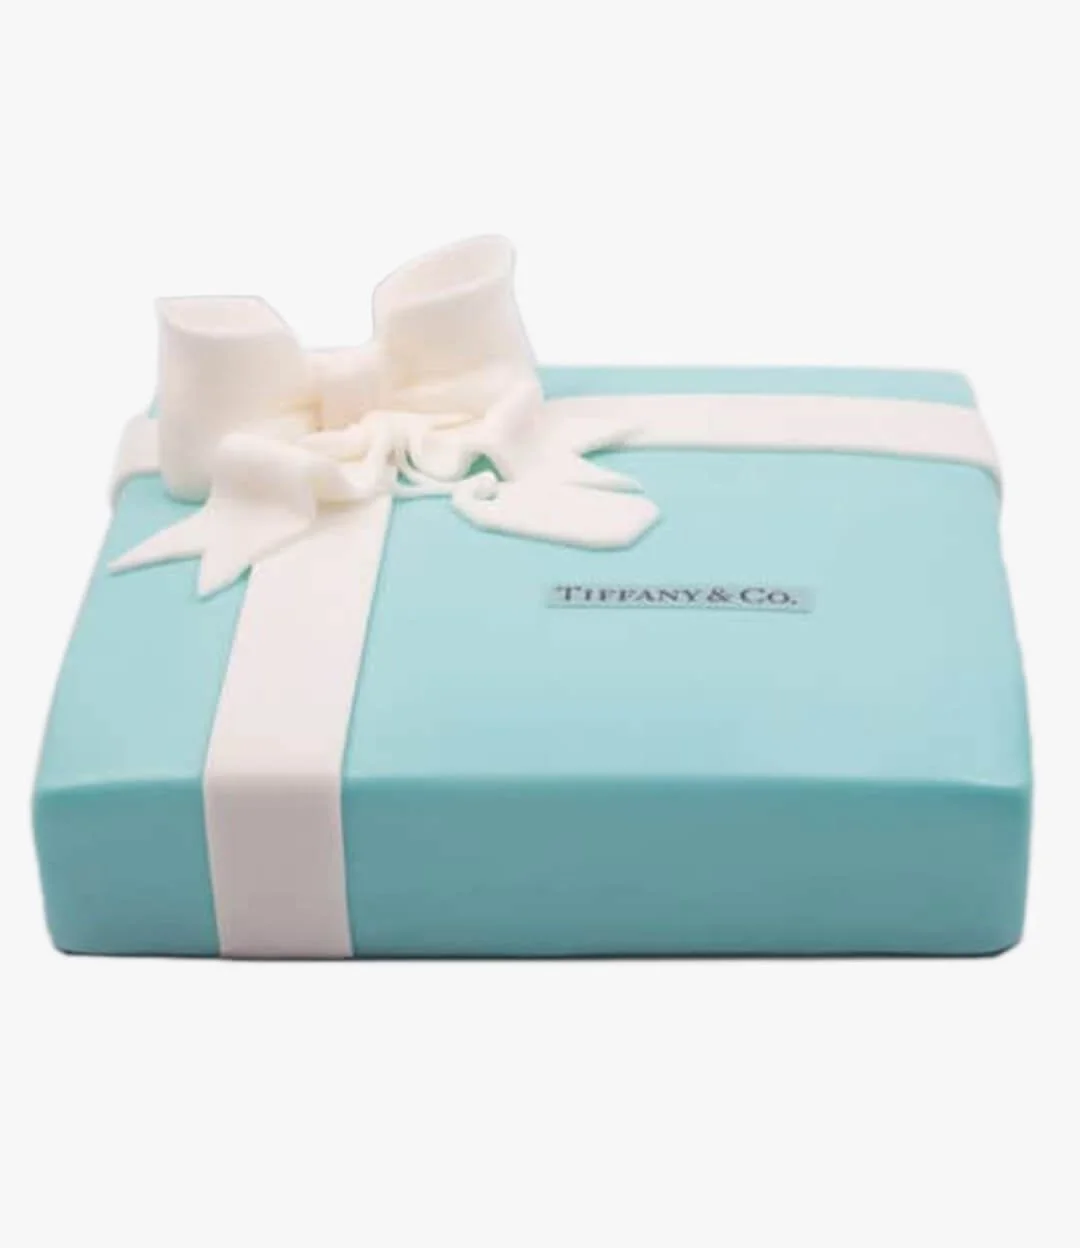 Tiffany's Cake 